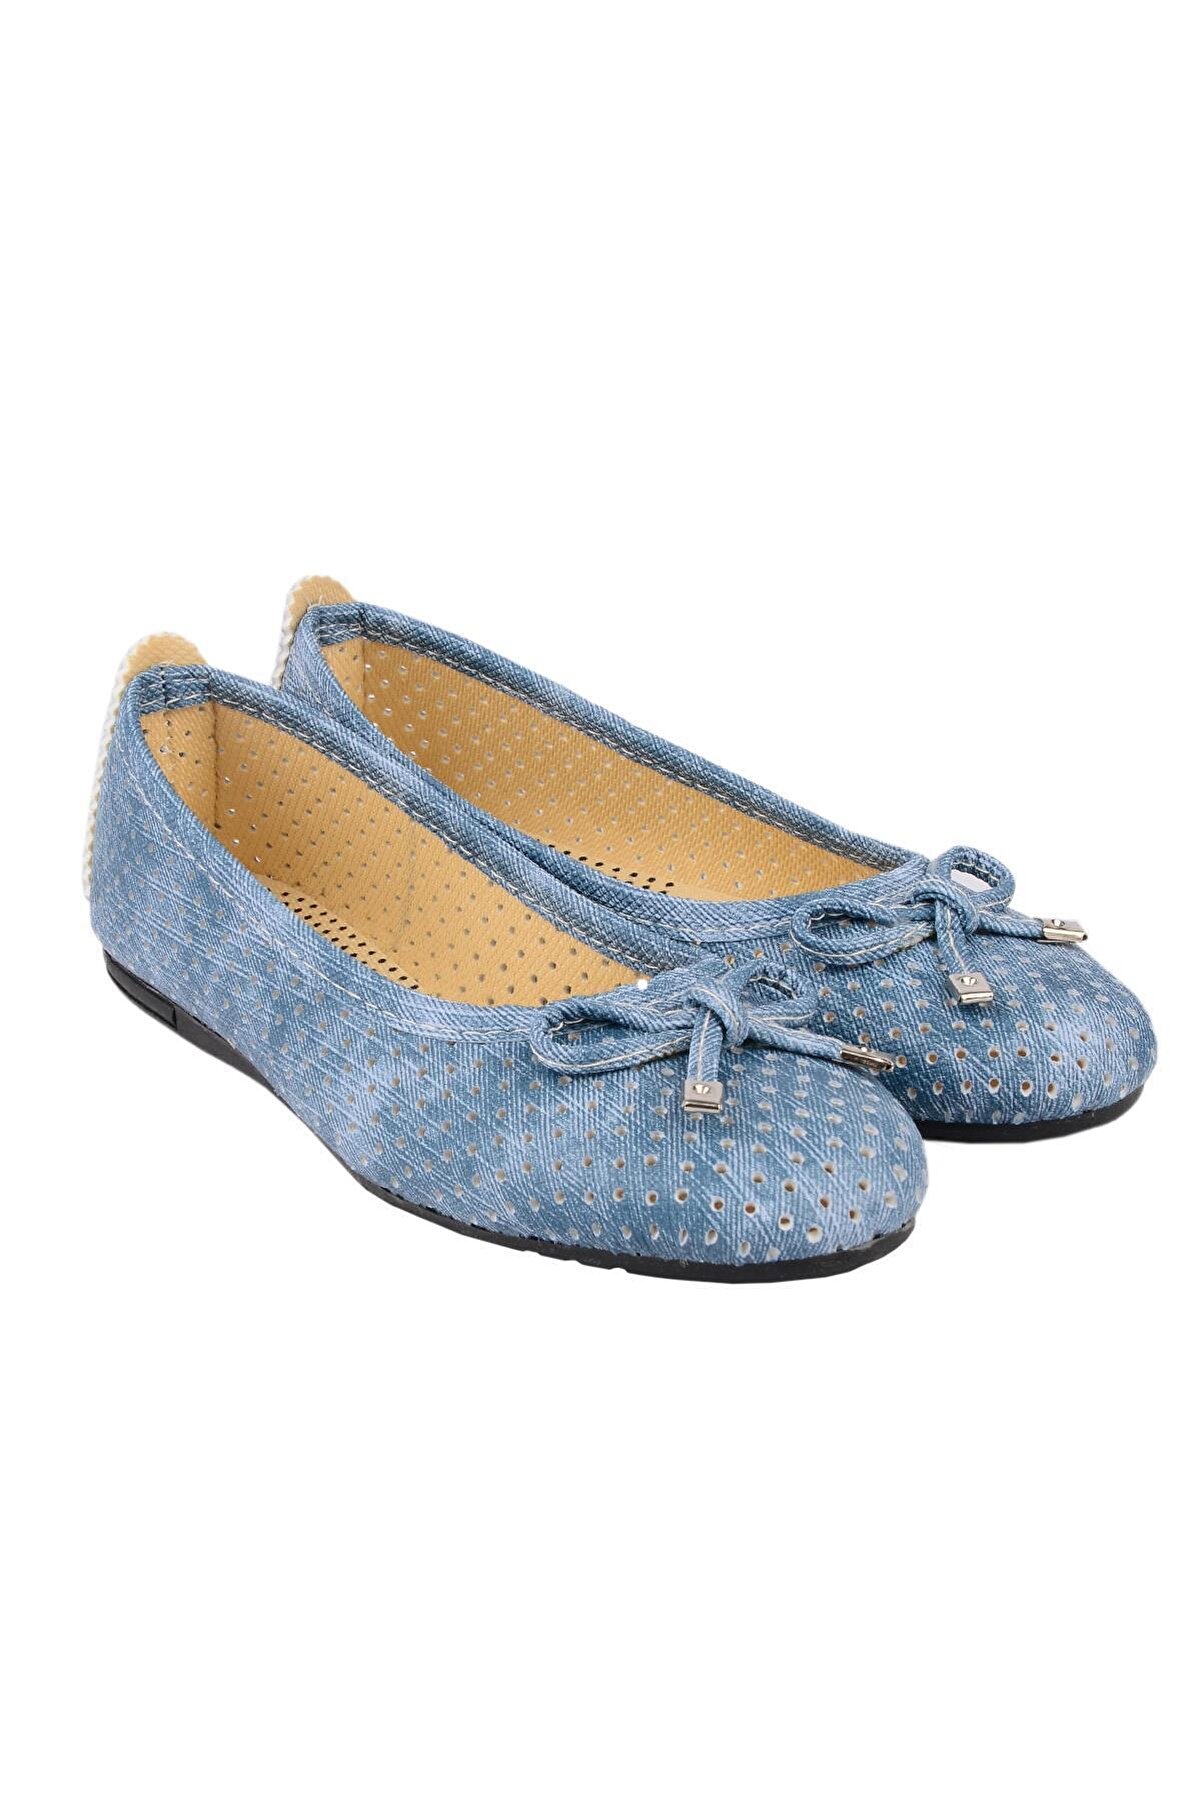 ODESA Kadın Kot Mavisi Günlük Babet Ayakkabı